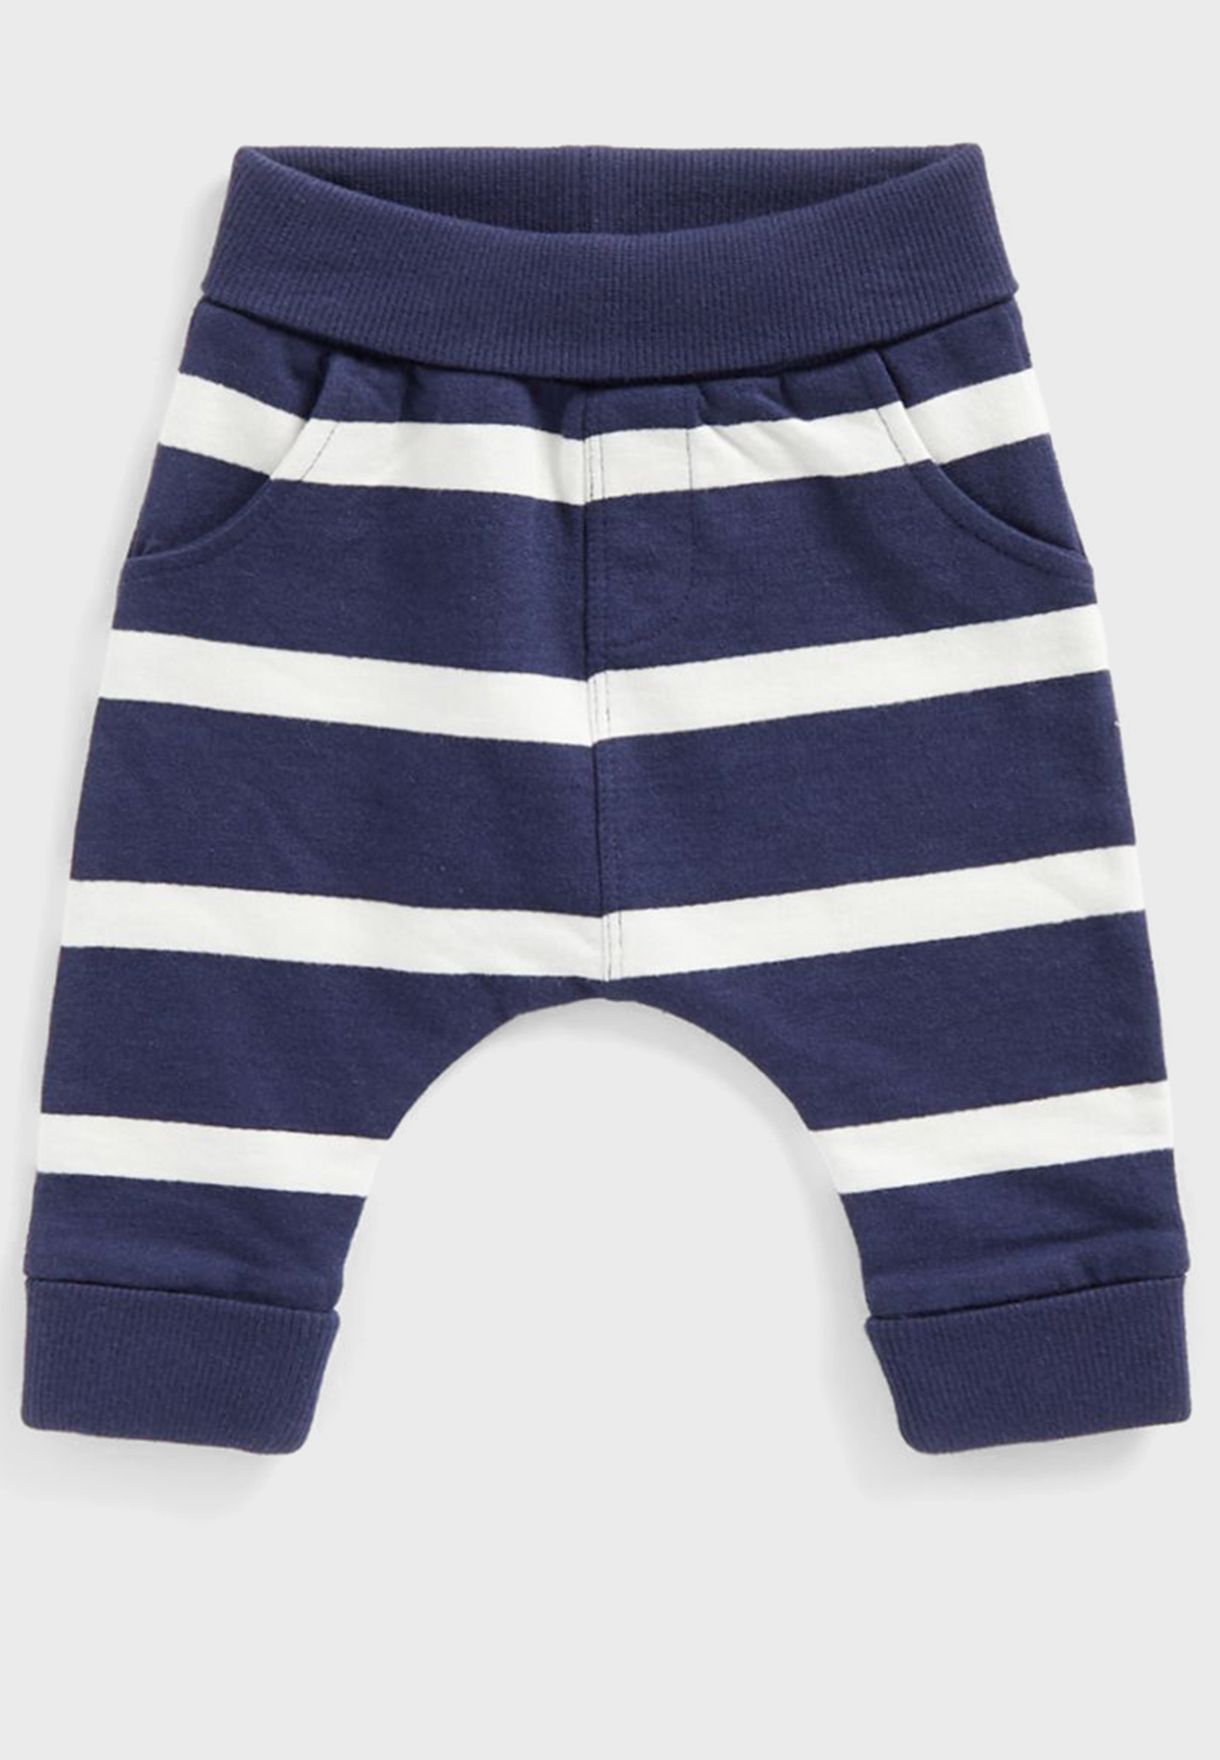 Infant Striped Bodysuits & Jogger Set